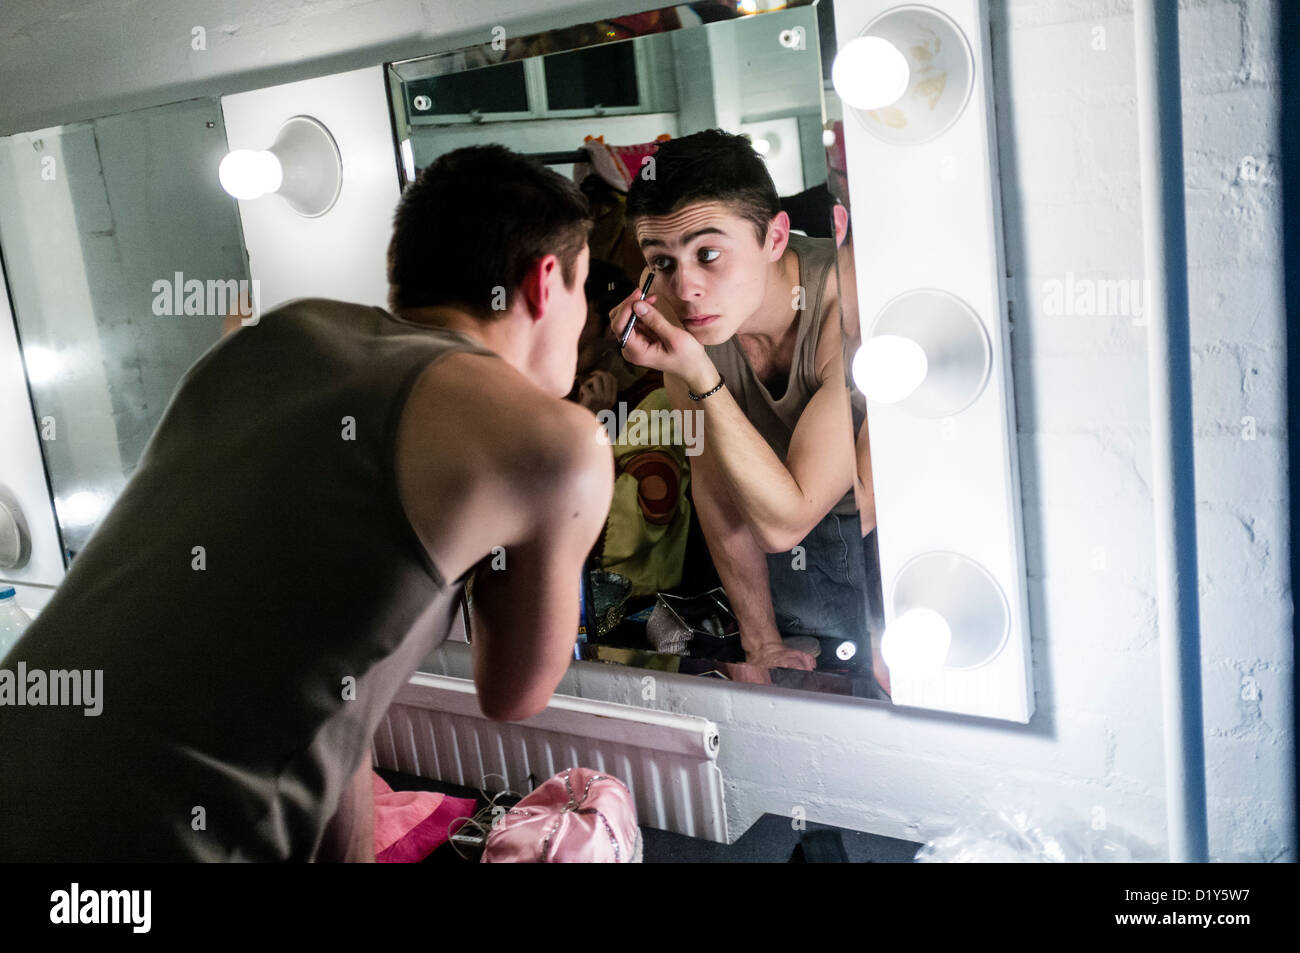 Un acteur masculin l'application make-up avant qu'une pantomime amateur Aladdin, UK Banque D'Images